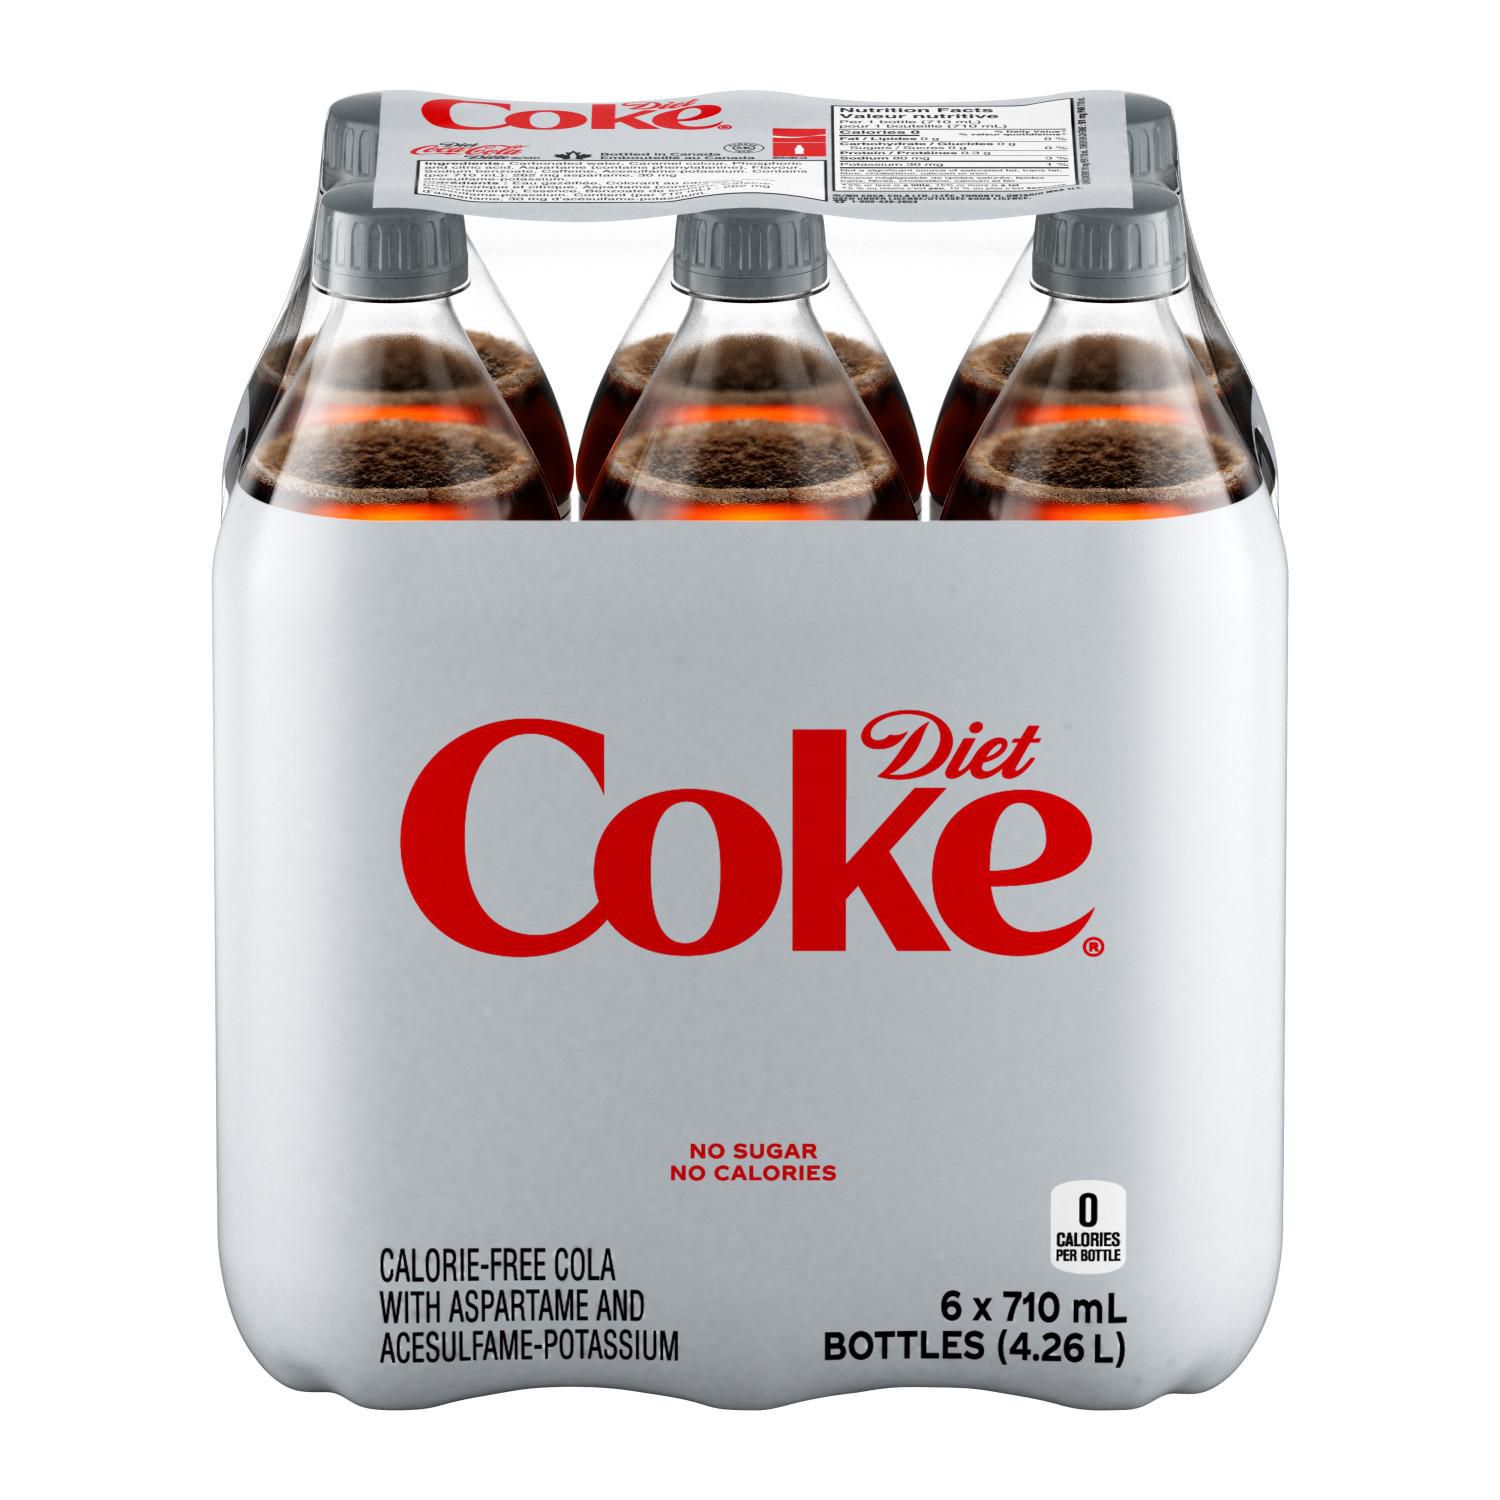 Diet Coke 710ml Bottles, 6 Pack